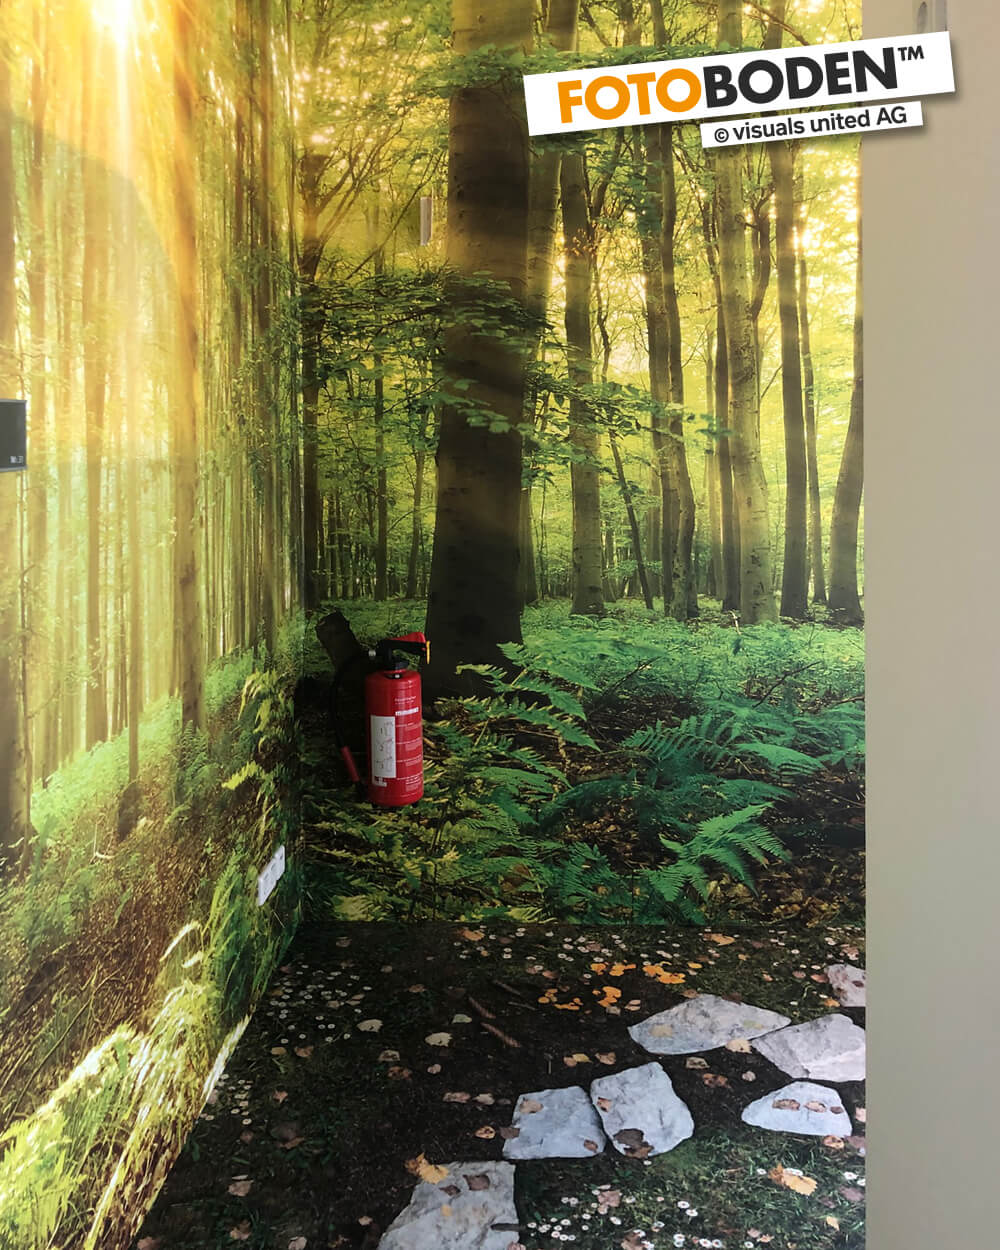 Individuell bedruckter Vinylboden - FOTOBODEN™ - Waldboden fotorealistisch gedruckt mit FOTOTAPETE, Blick in den Wald, passend zum Boden.